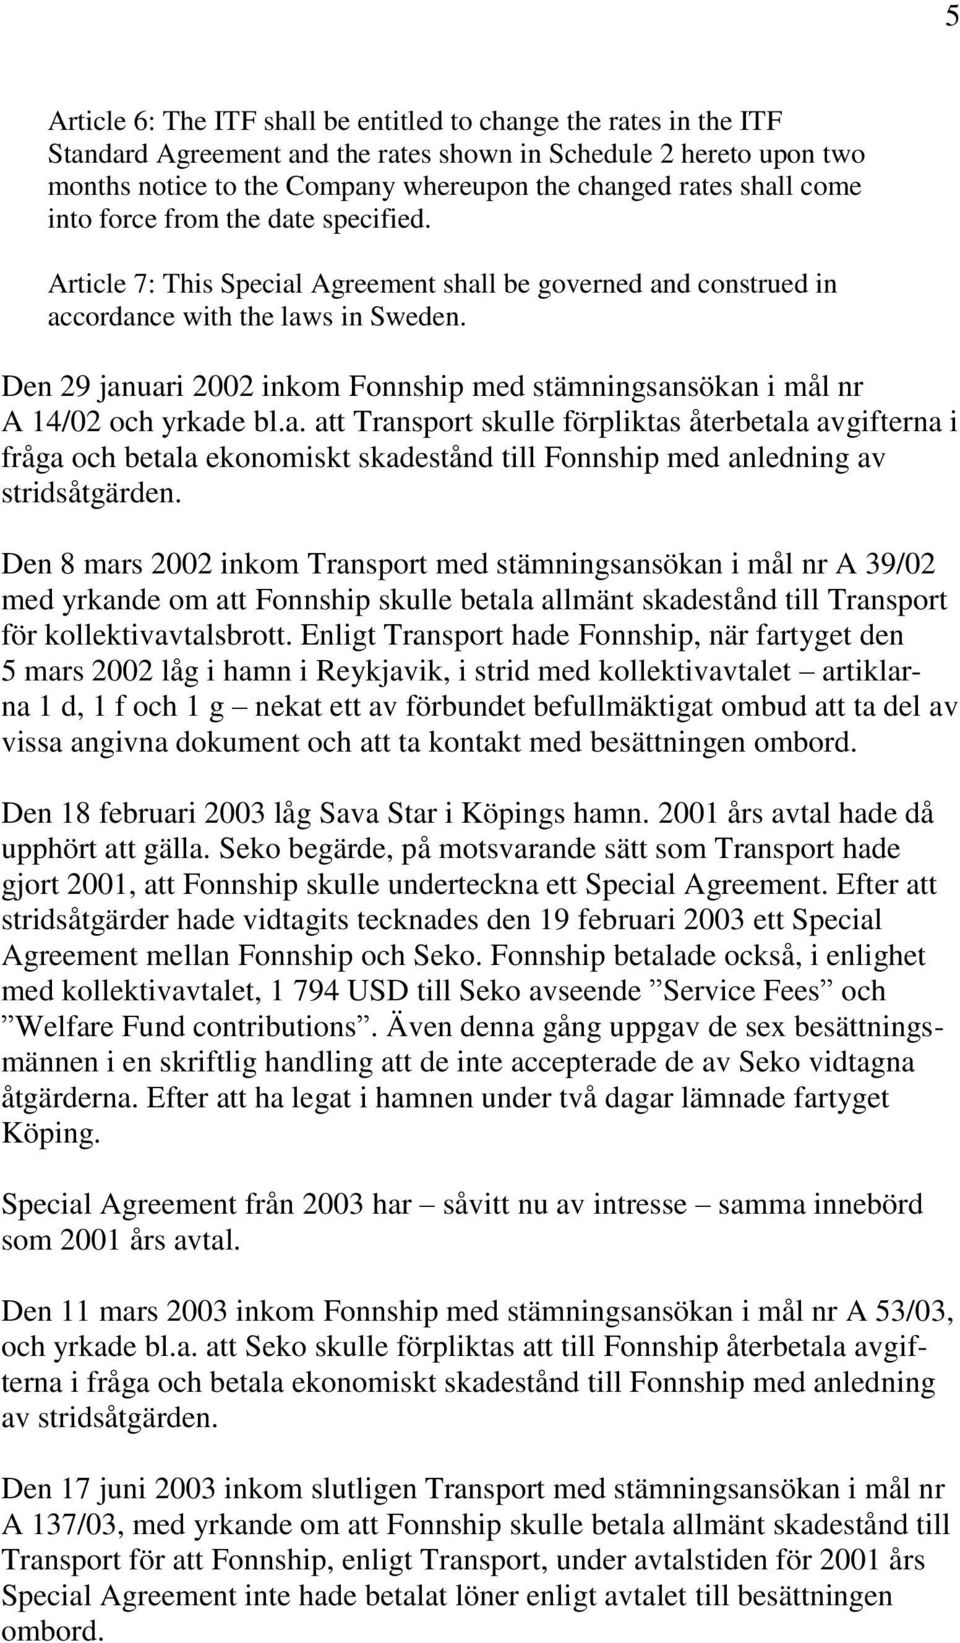 Den 29 januari 2002 inkom Fonnship med stämningsansökan i mål nr A 14/02 och yrkade bl.a. att Transport skulle förpliktas återbetala avgifterna i fråga och betala ekonomiskt skadestånd till Fonnship med anledning av stridsåtgärden.